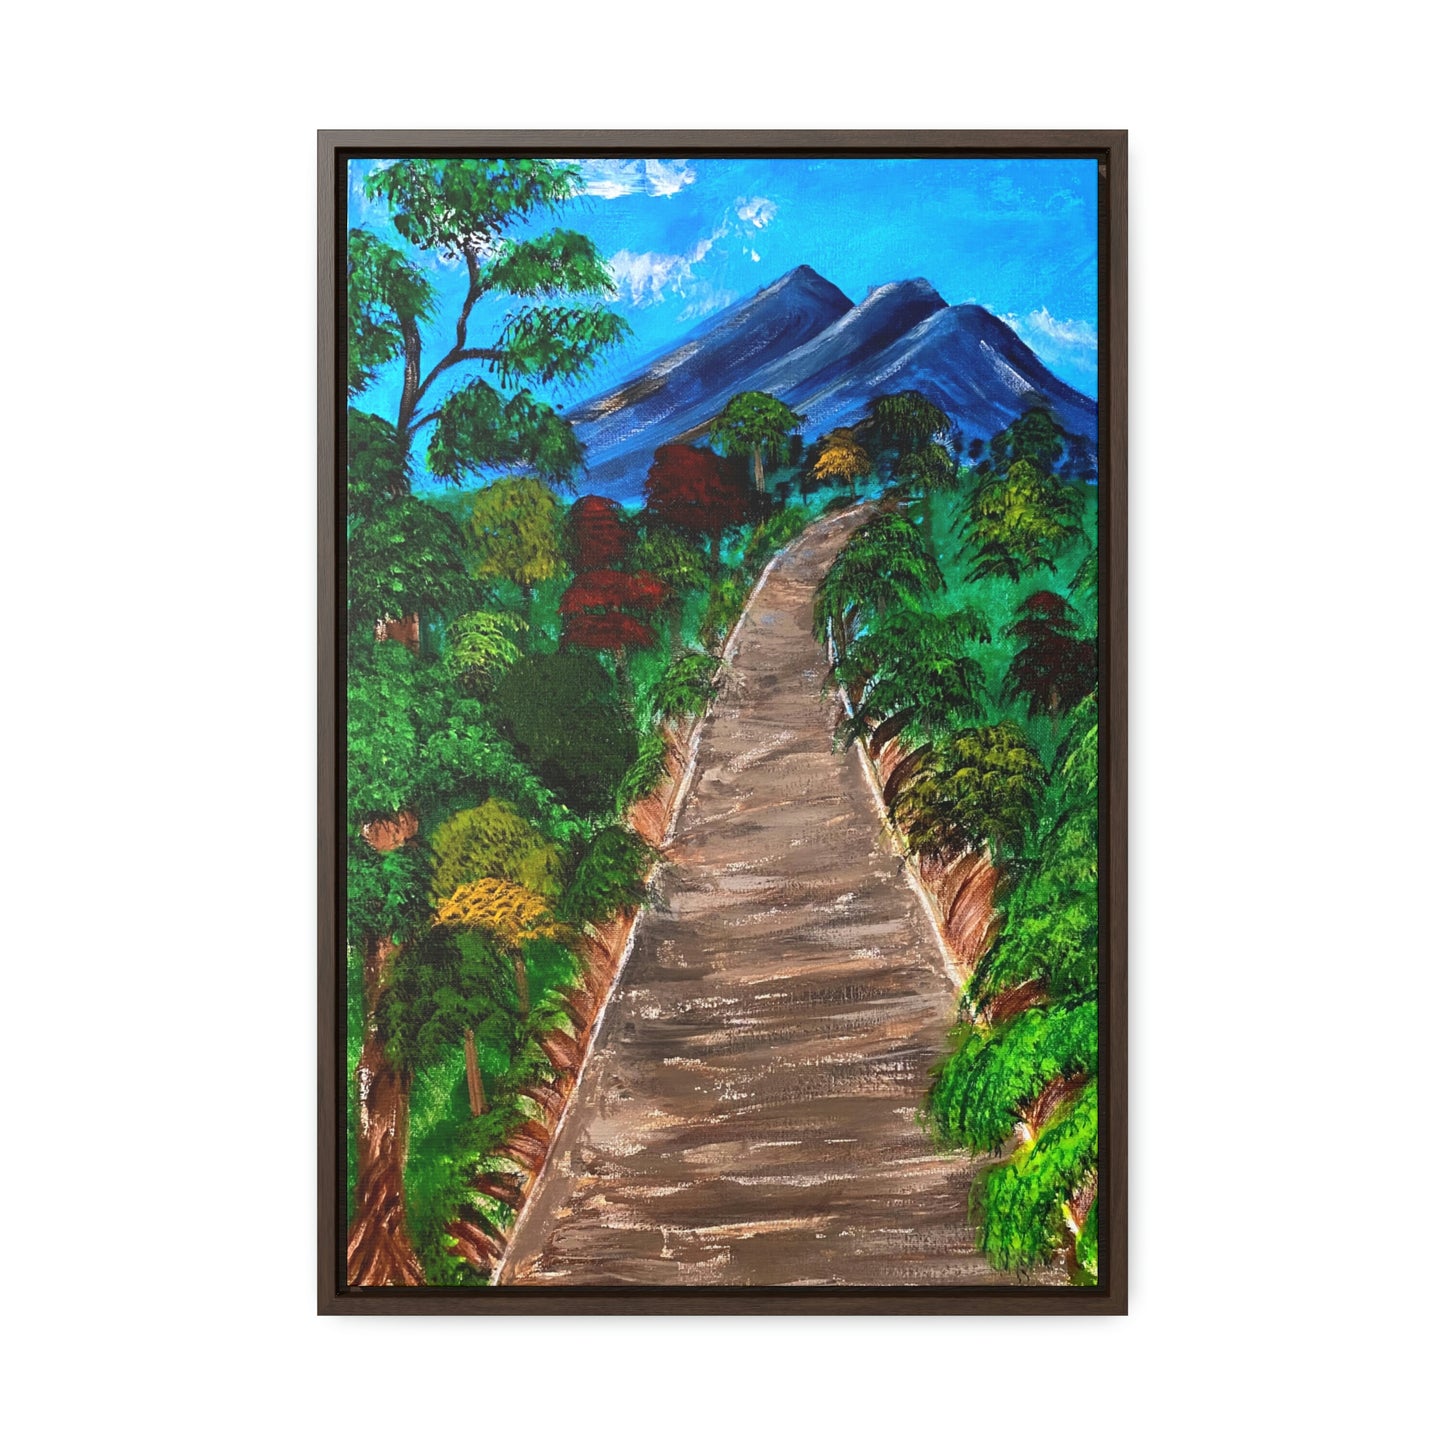 Gallery Canvas Wraps, Mountain Landscape Art